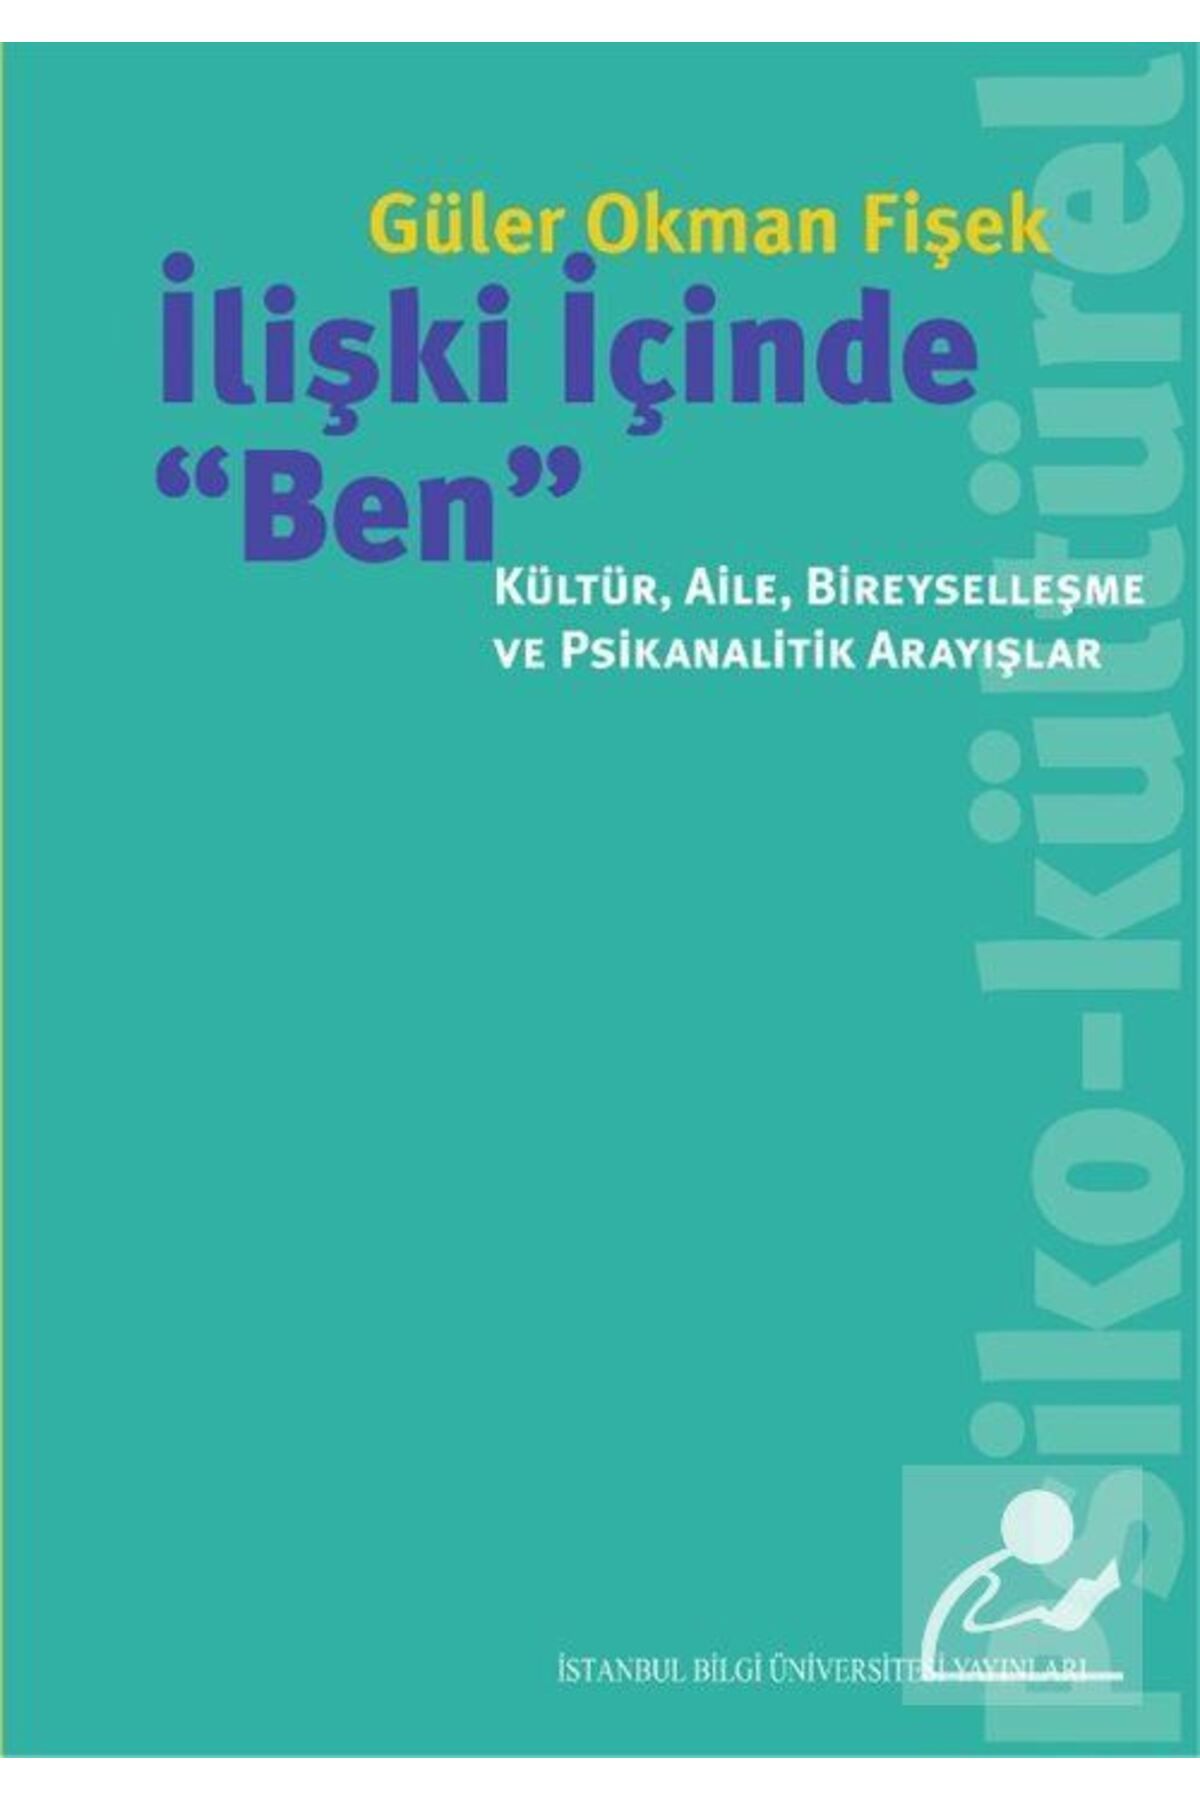 İstanbul Bilgi Üniversitesi Yayınları İlişki Içinde "ben": Kültür, Aile, Bireyselleşme Ve Psikanalitik Arayışlar